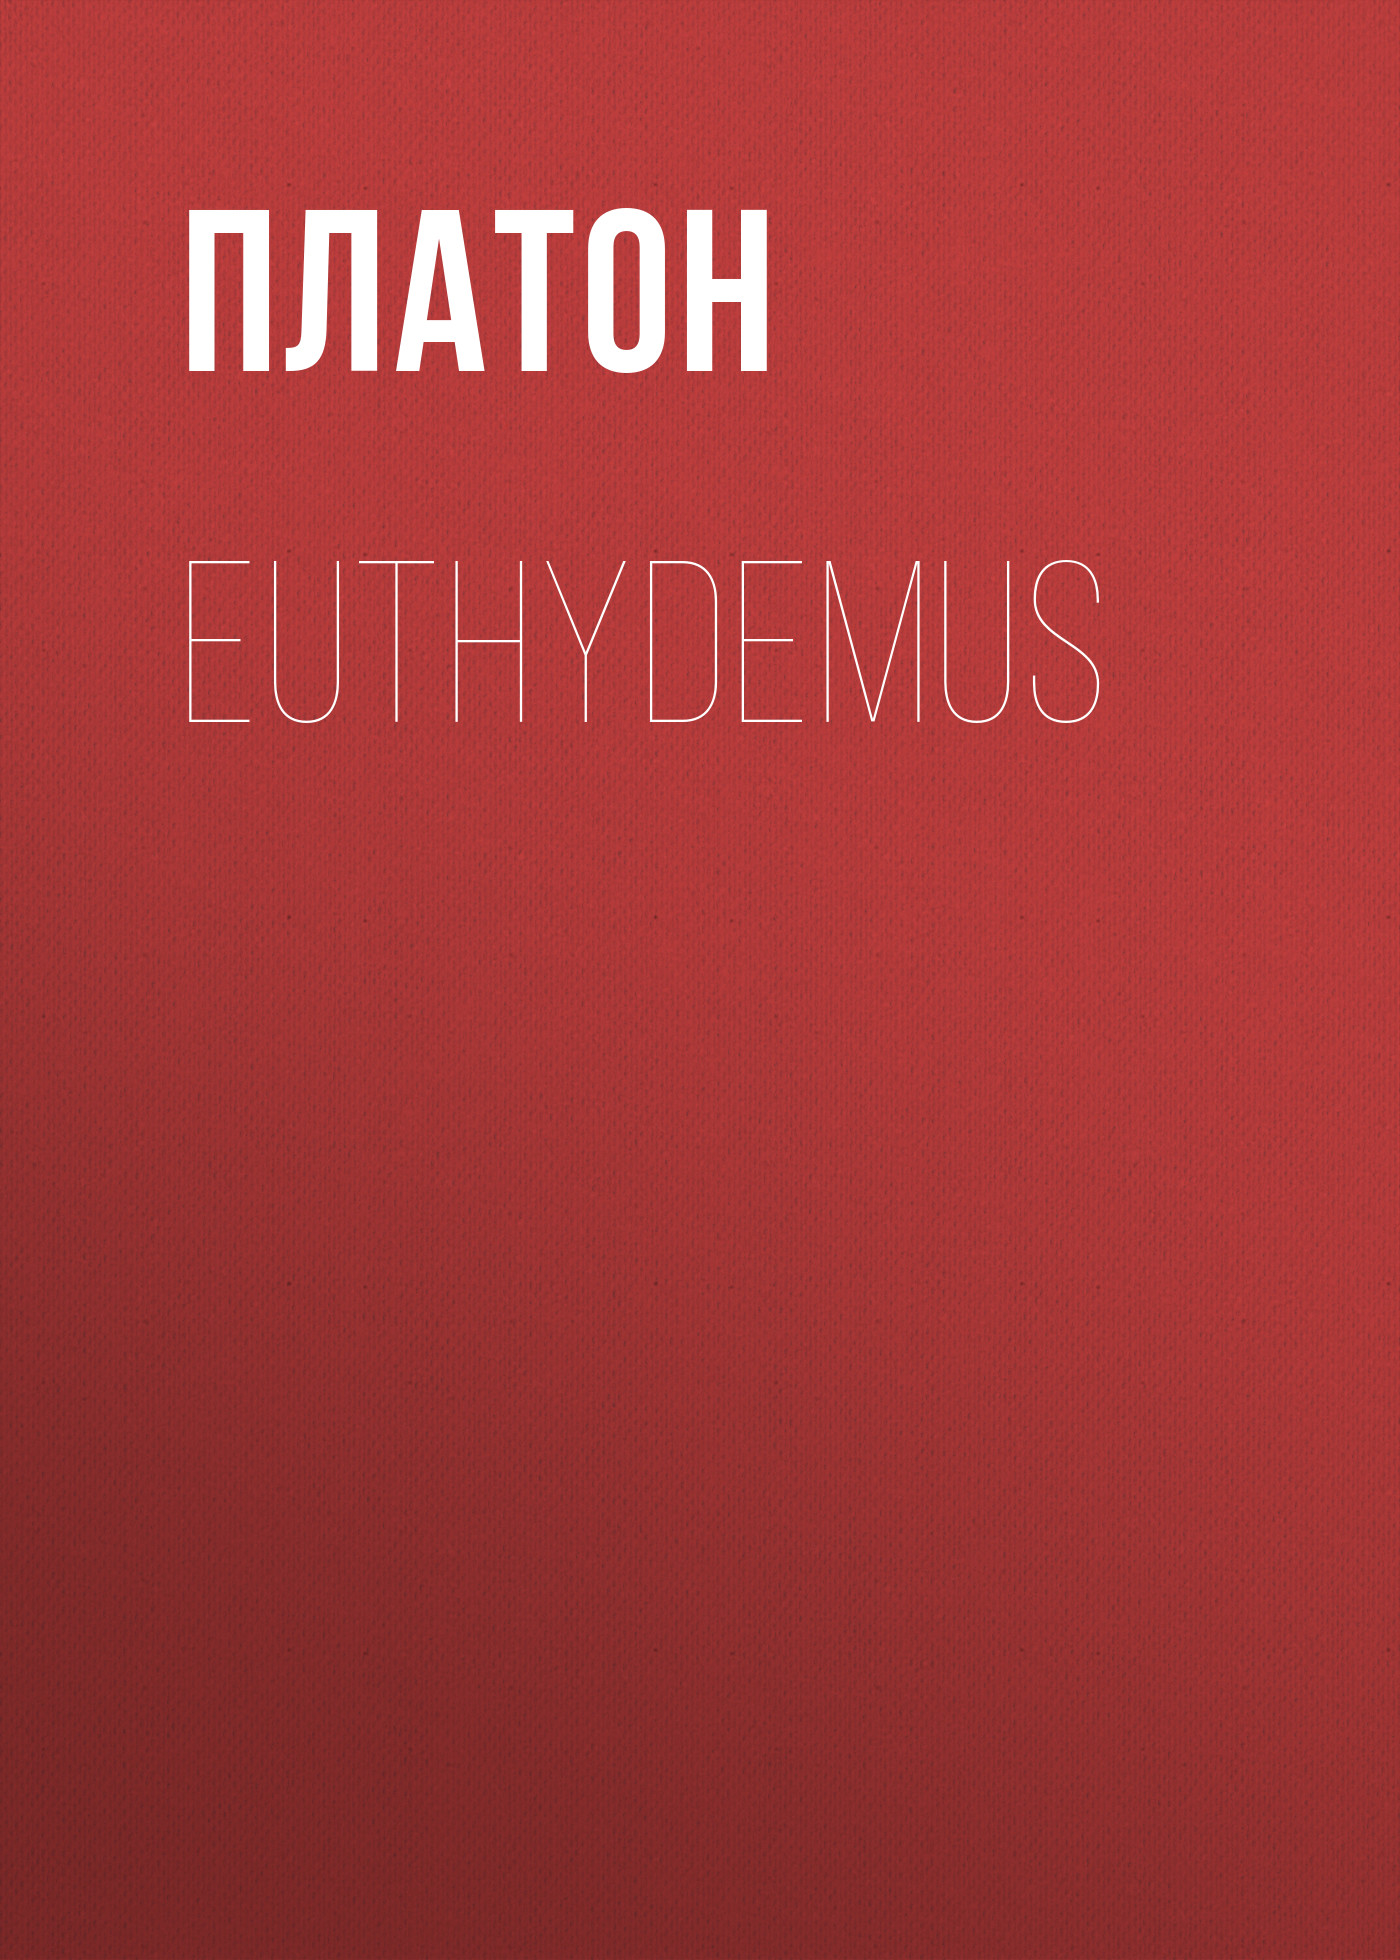 Книга Euthydemus из серии , созданная  Платон, может относится к жанру Философия, Зарубежная старинная литература, Зарубежная классика. Стоимость электронной книги Euthydemus с идентификатором 25293163 составляет 0 руб.